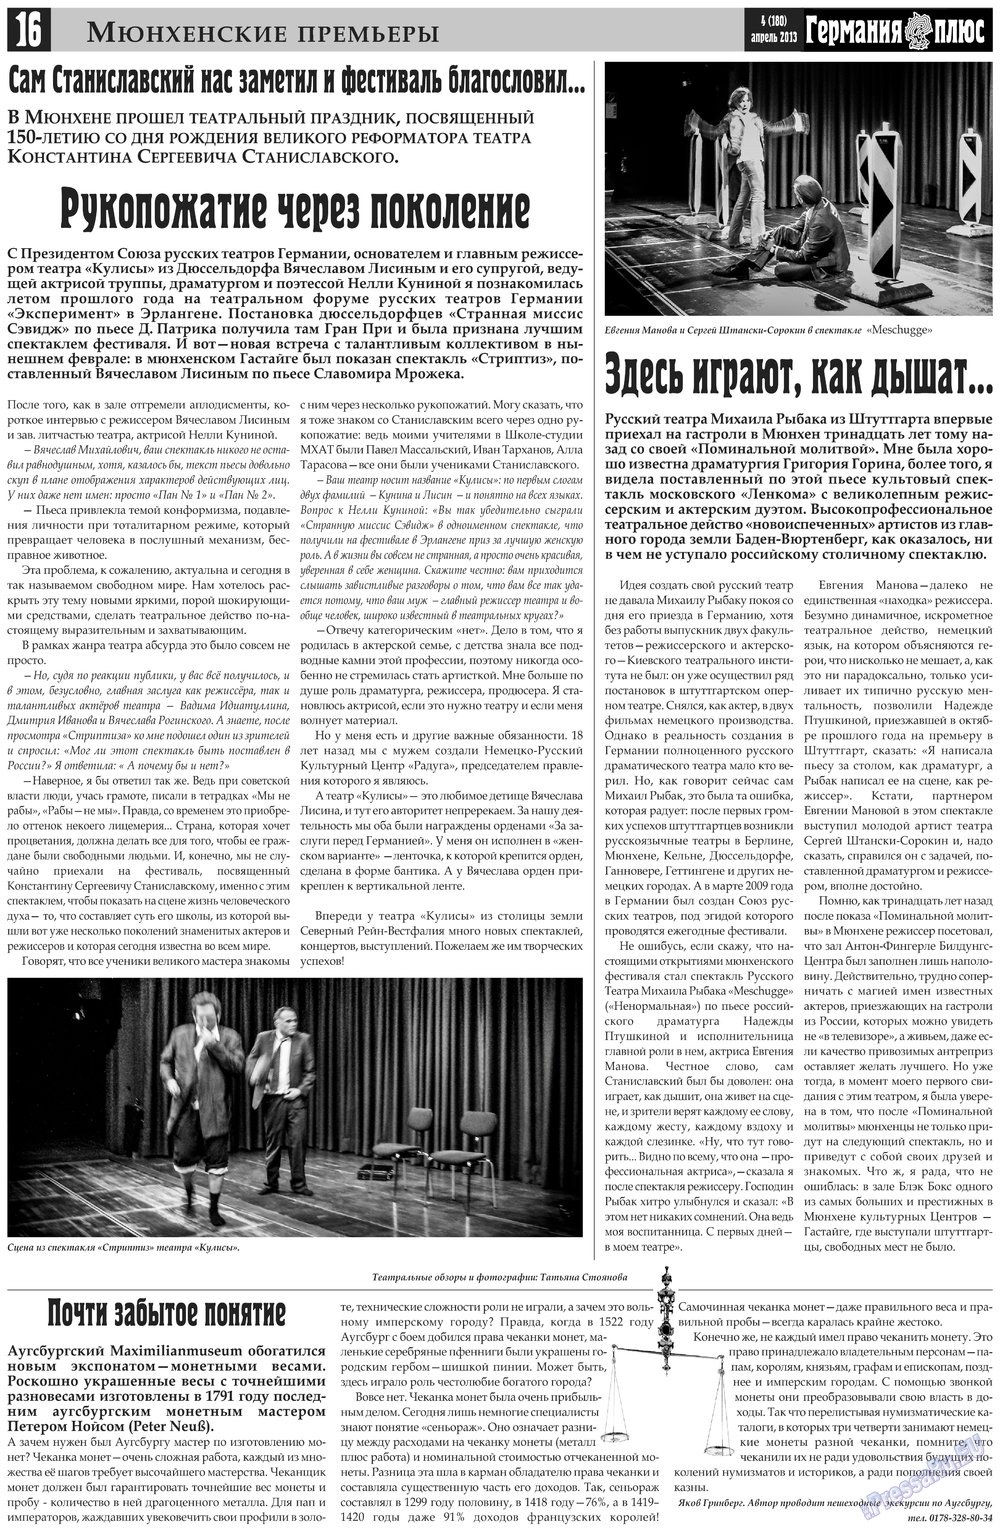 Германия плюс, газета. 2013 №4 стр.16